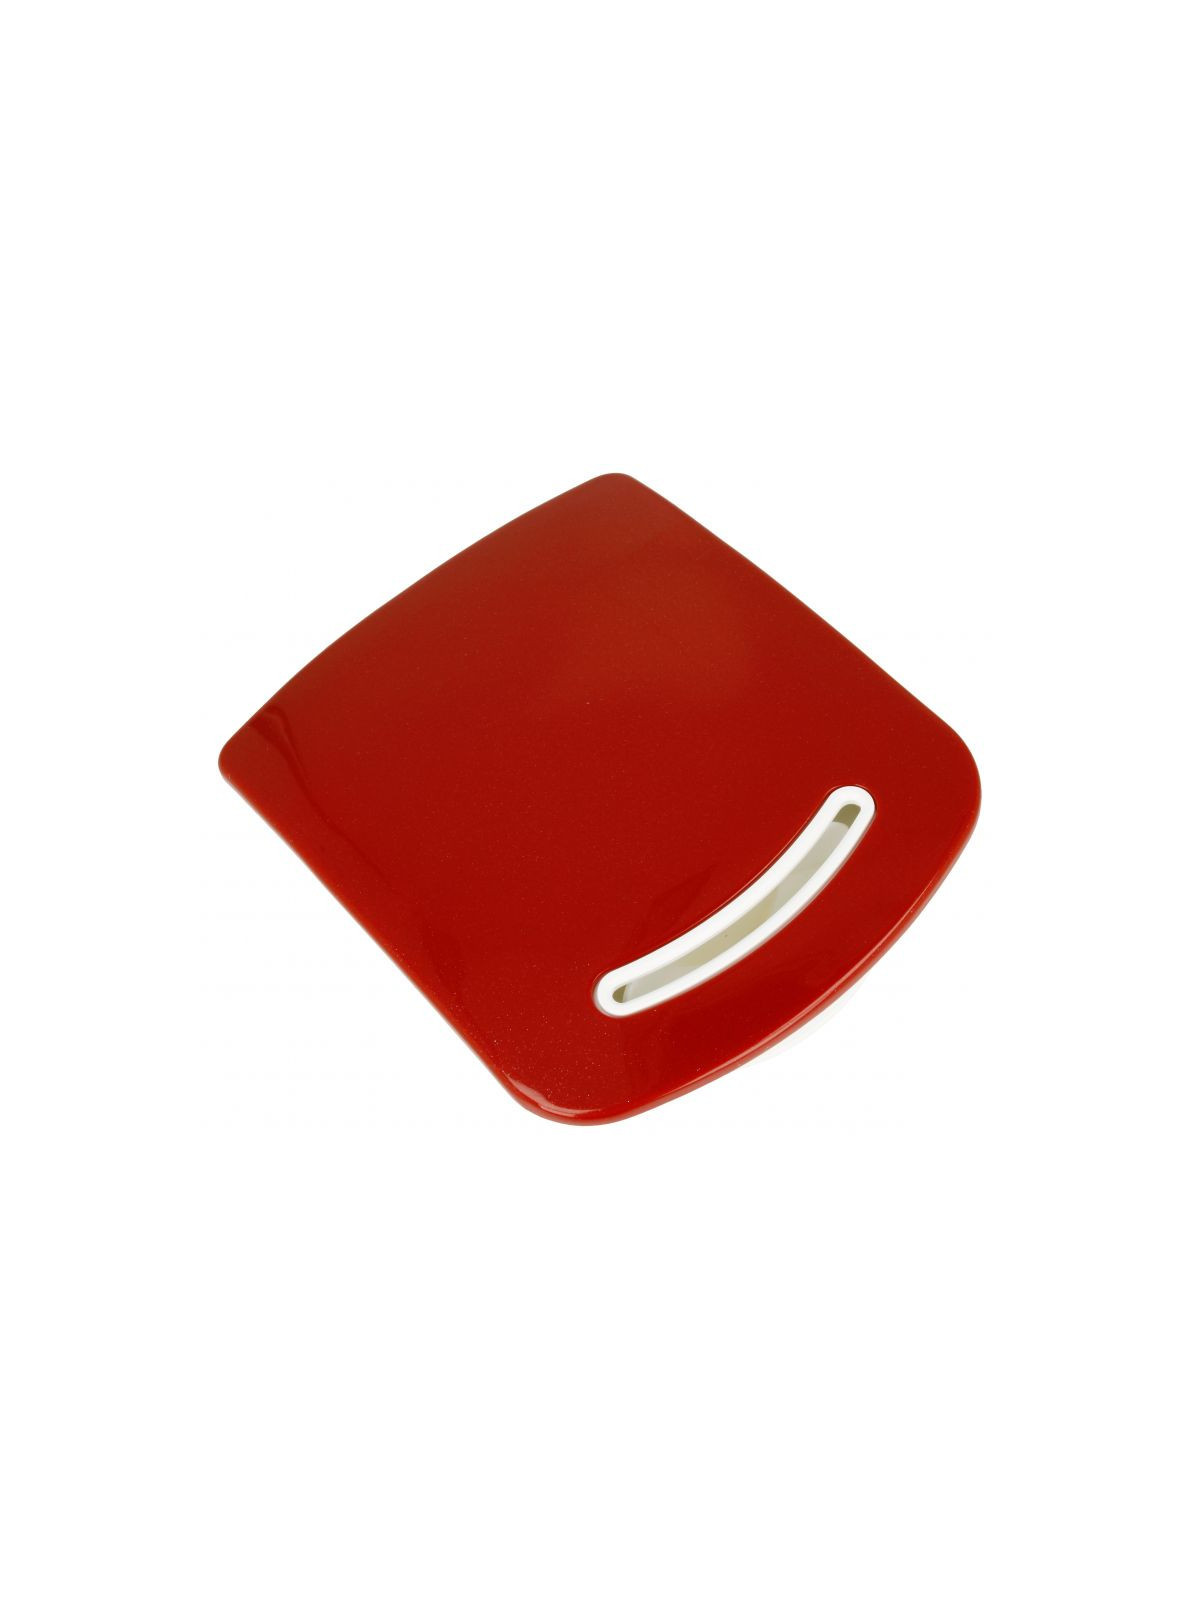 Soupape rouge Moulinex MultiCooker 12 en 1 - Multicuiseur